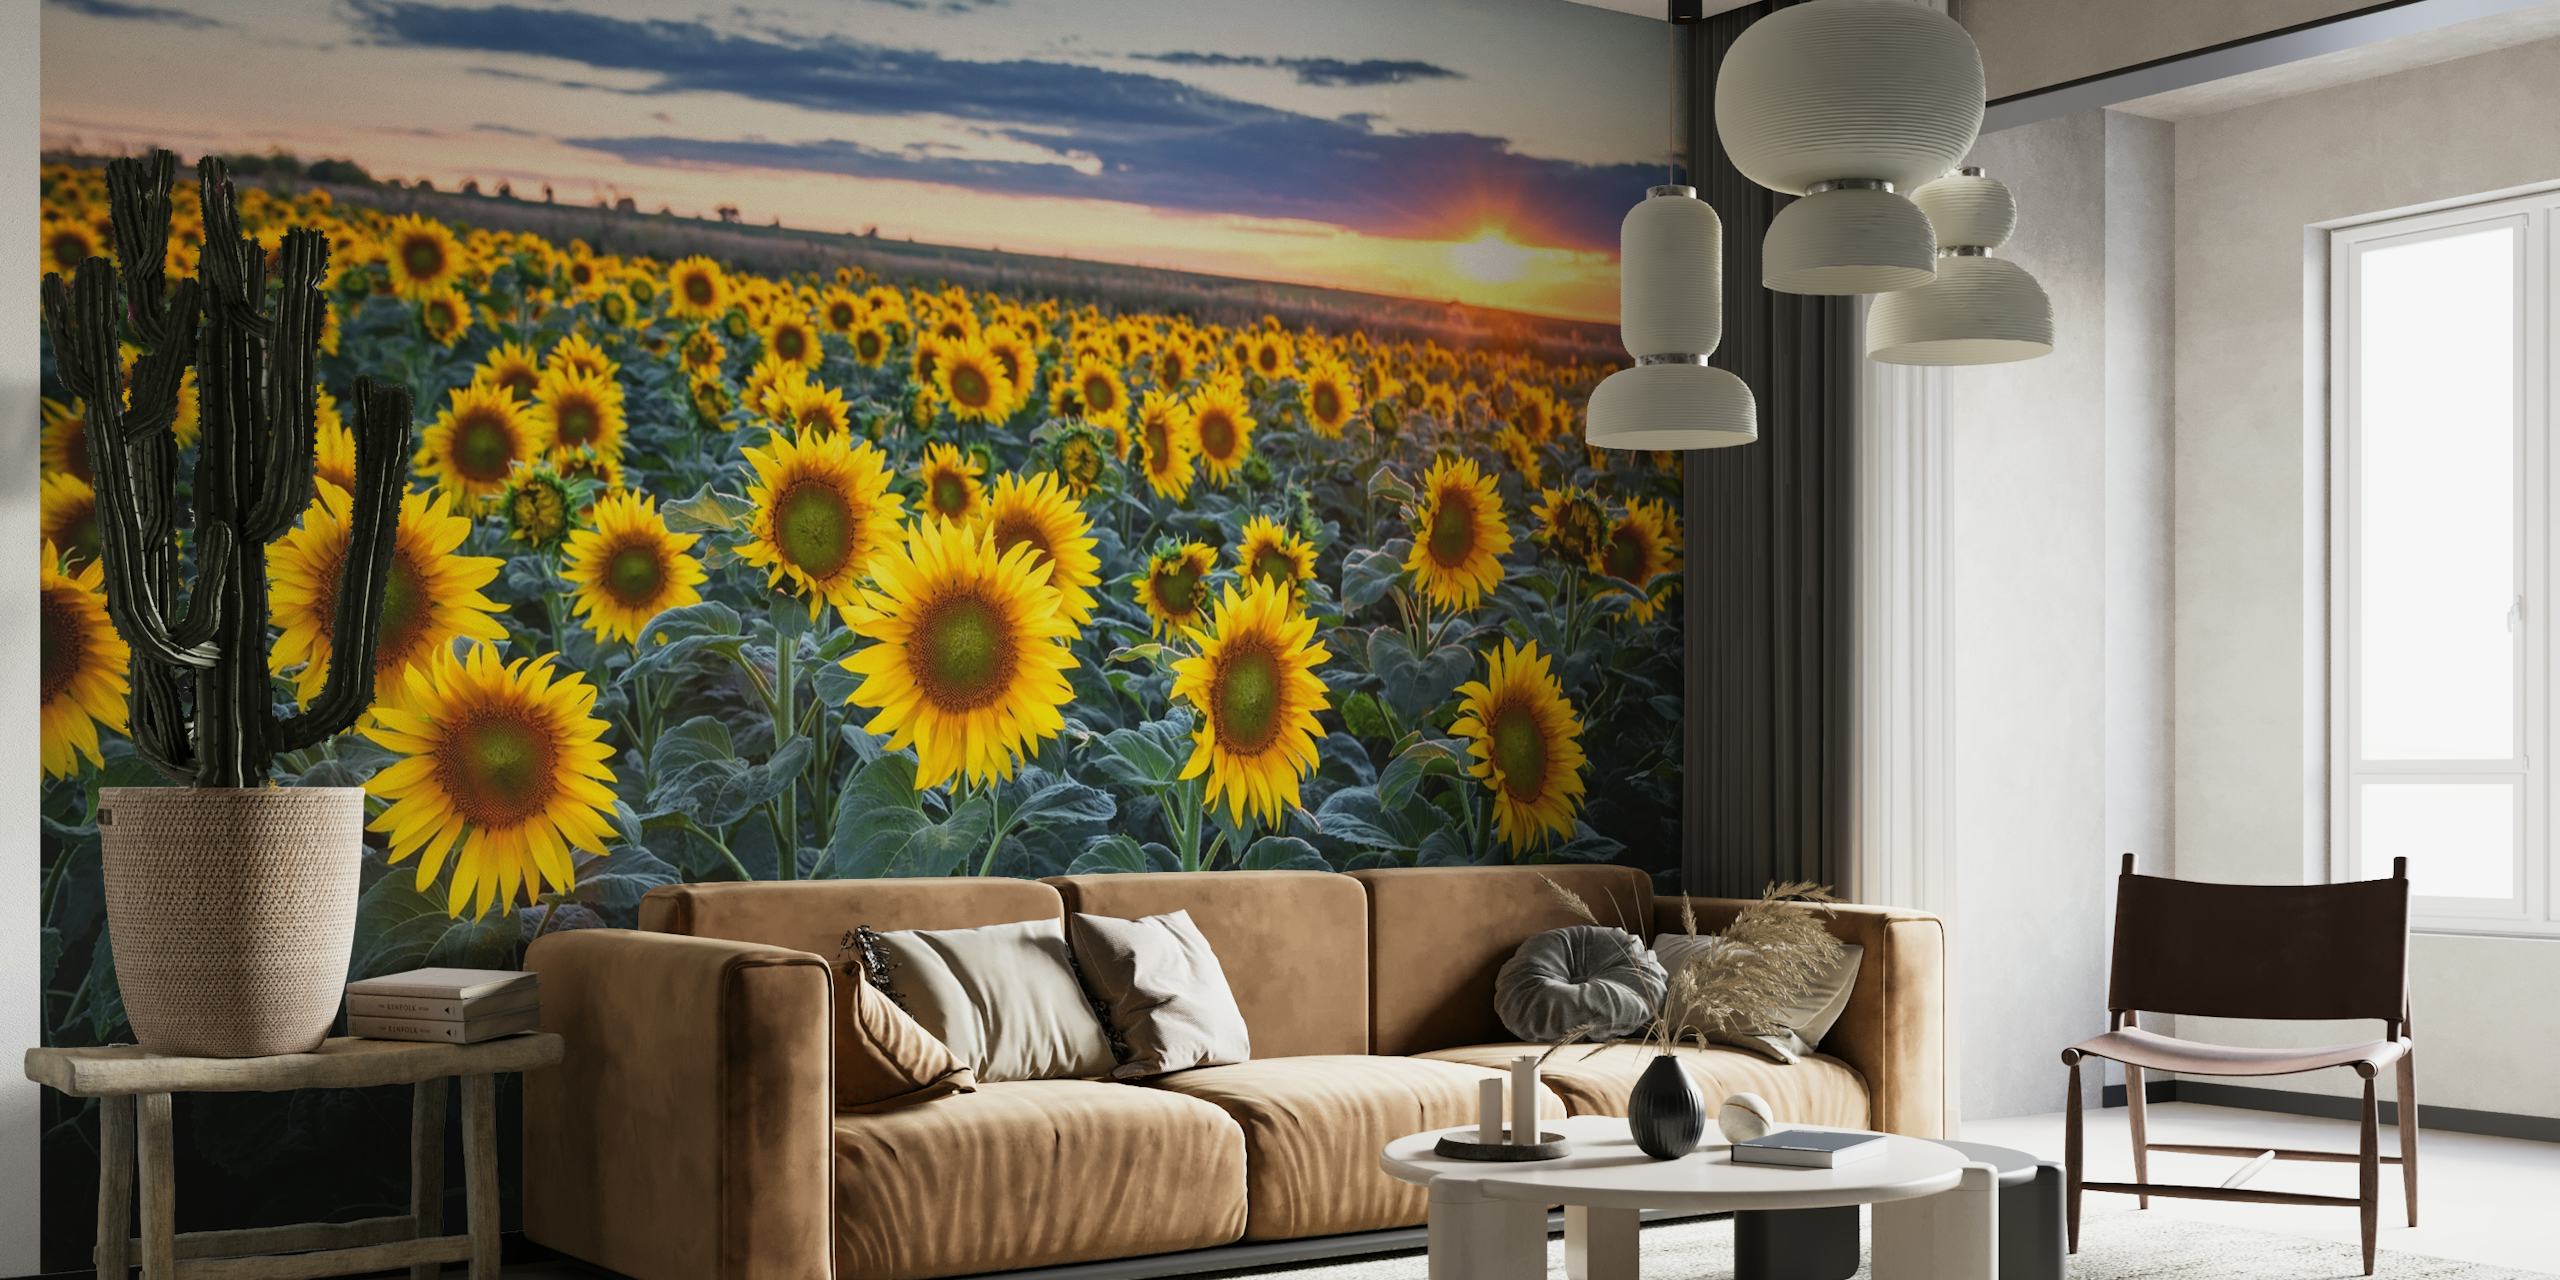 Sunflowers Sun behang